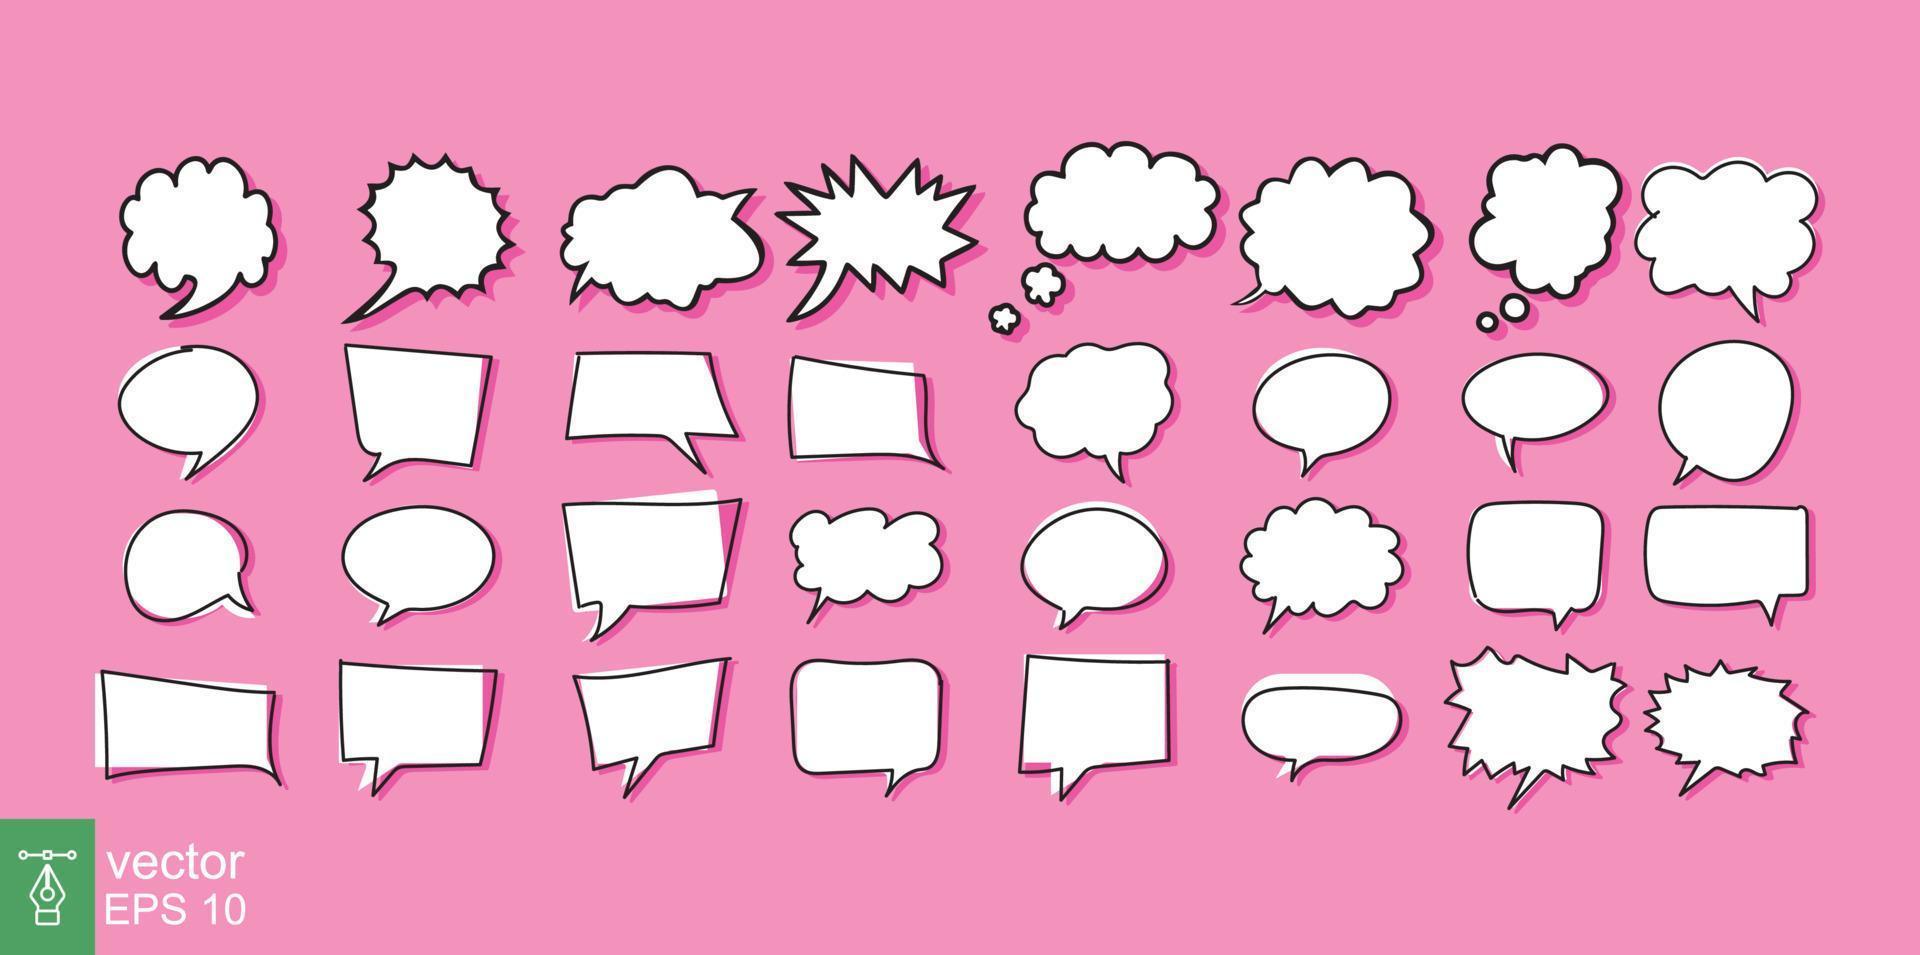 conjunto de iconos de burbuja de voz de dibujos animados de nube diferente. estilo plano sencillo. dibujado a mano, garabato, concepto de comunicación. colección de ilustraciones vectoriales aisladas sobre fondo rosa. eps 10. vector